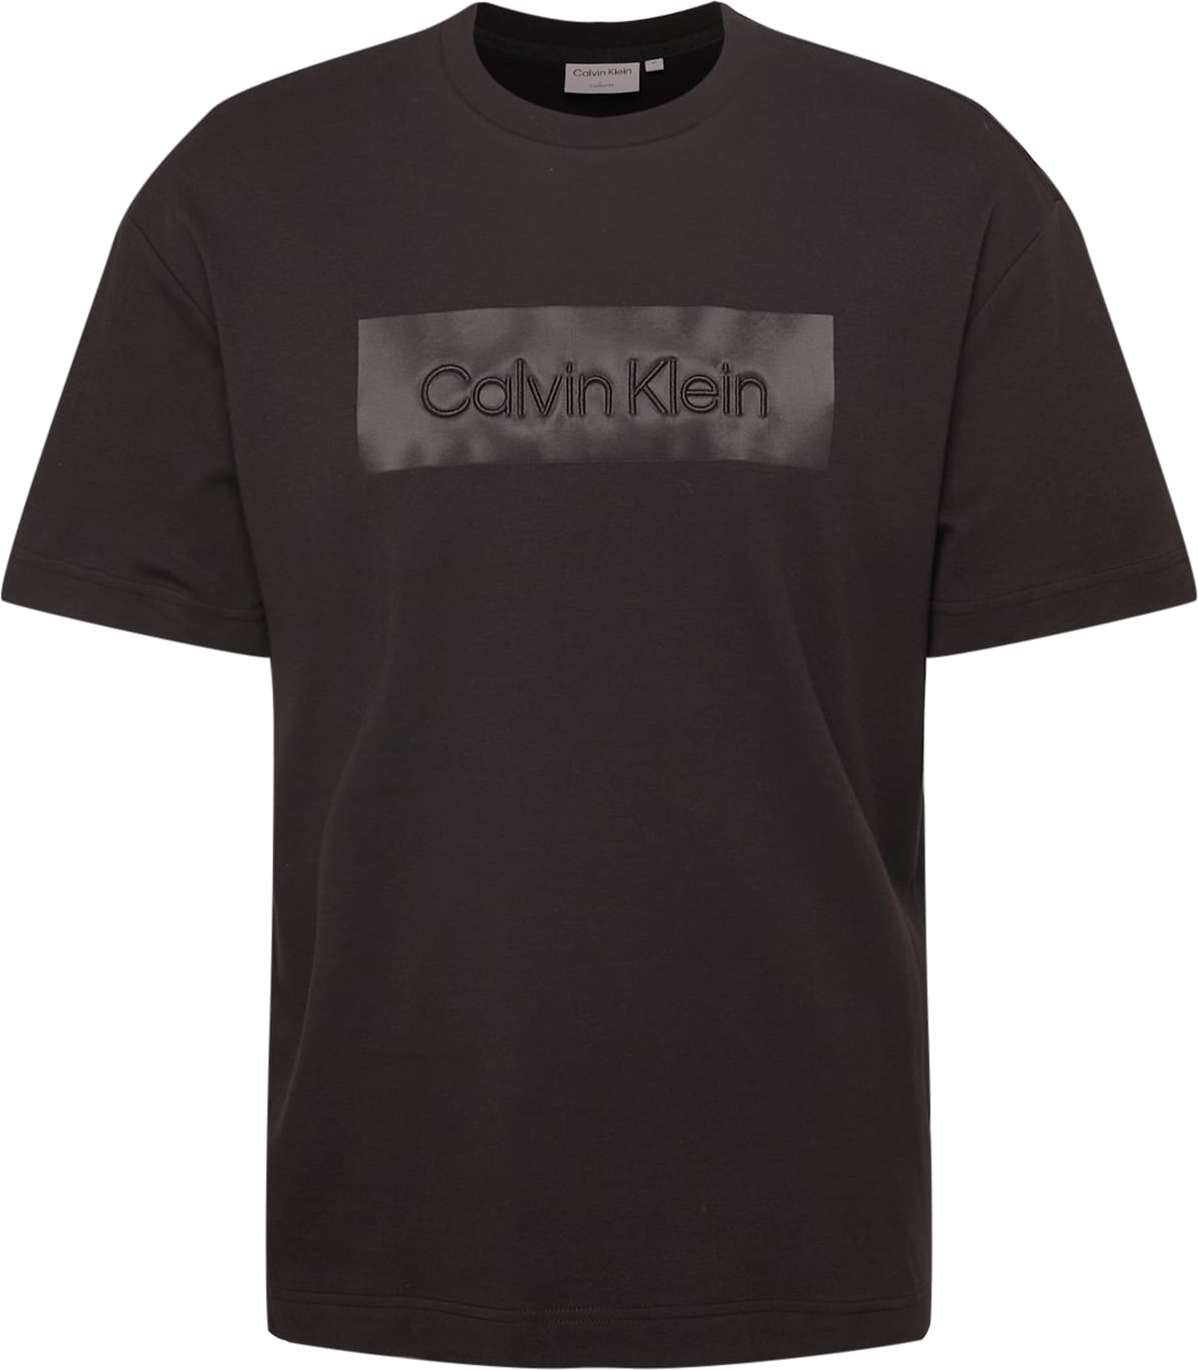 Tričko Calvin Klein černá